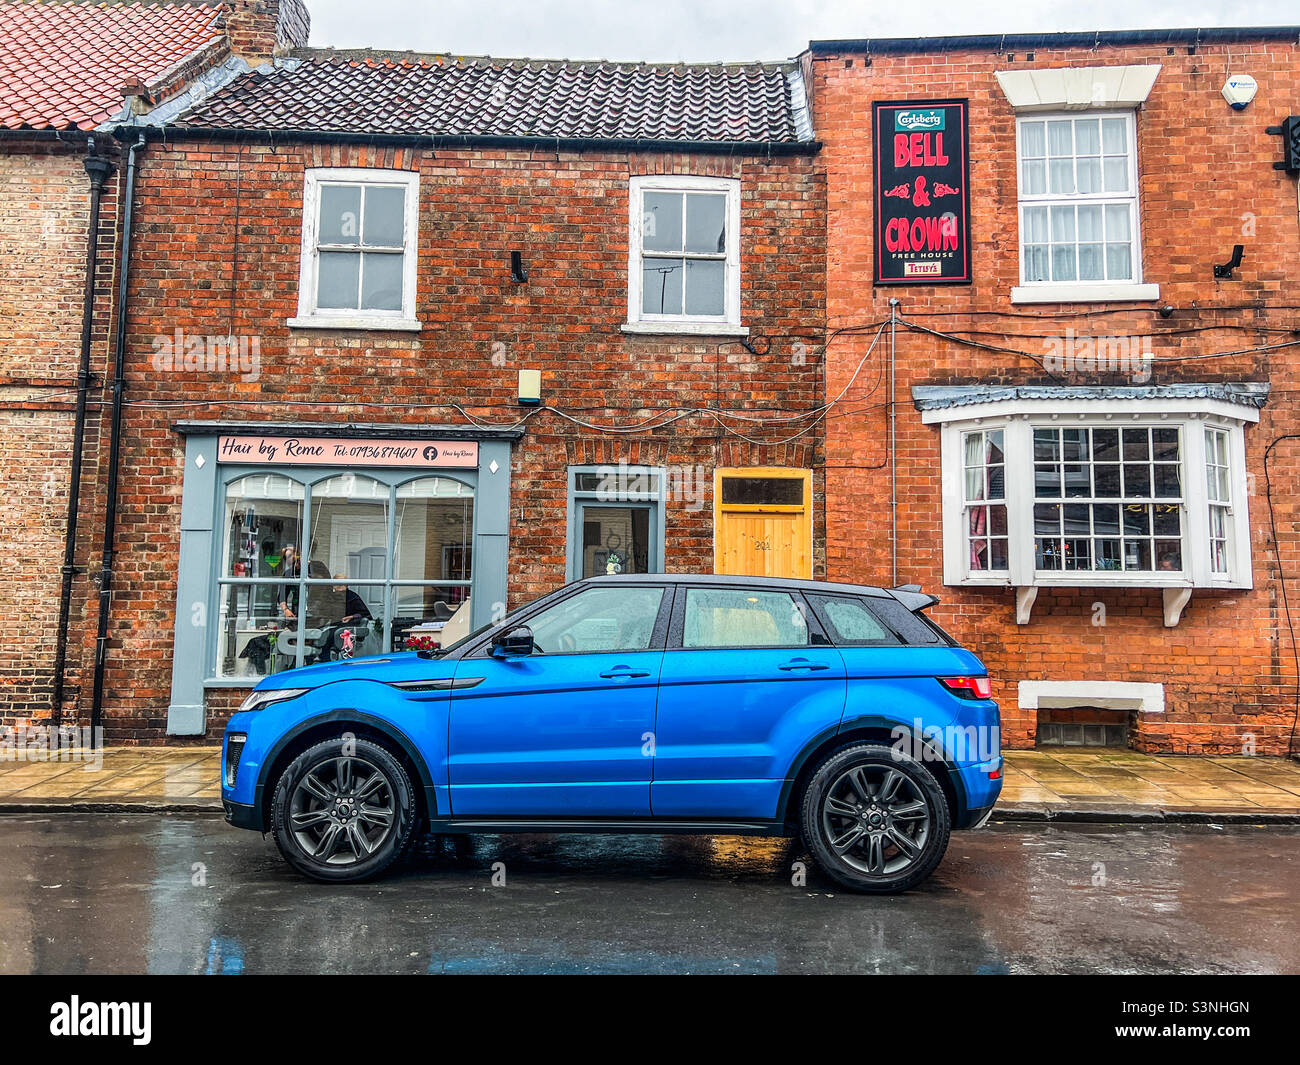 Voiture Range Rover Evoque bleu vif garée sur la route dans un village urbain Banque D'Images